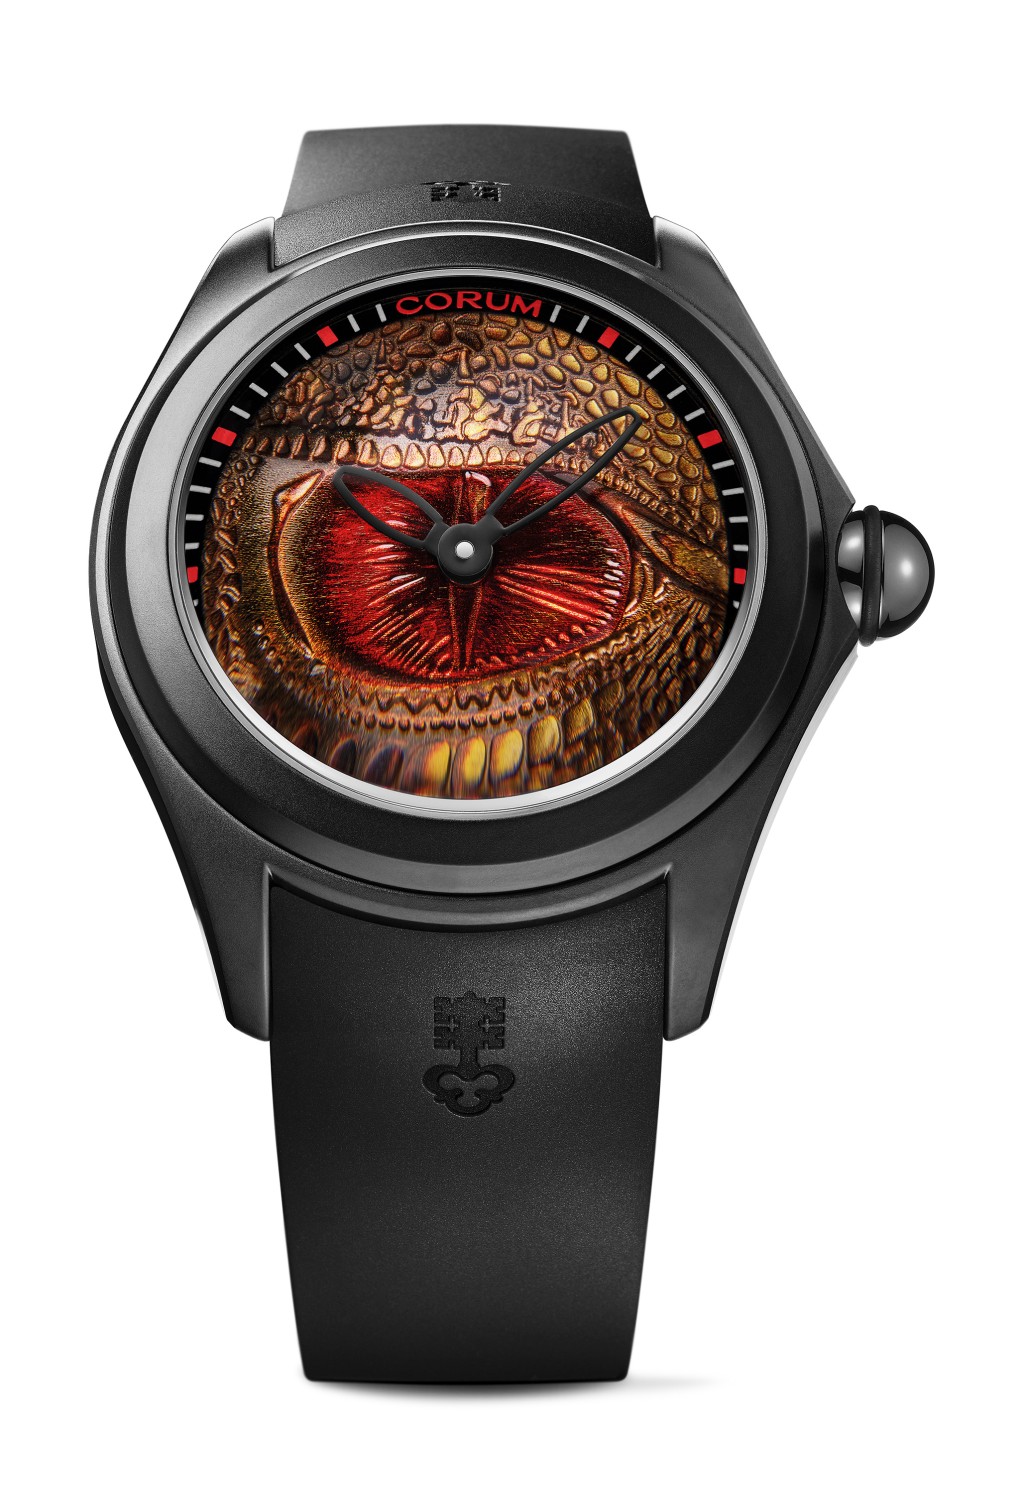 Dragon Eye的設計則極為大膽，錶盤運用特殊金屬鑄造技術，配合人手彩繪製作龍的眼睛。